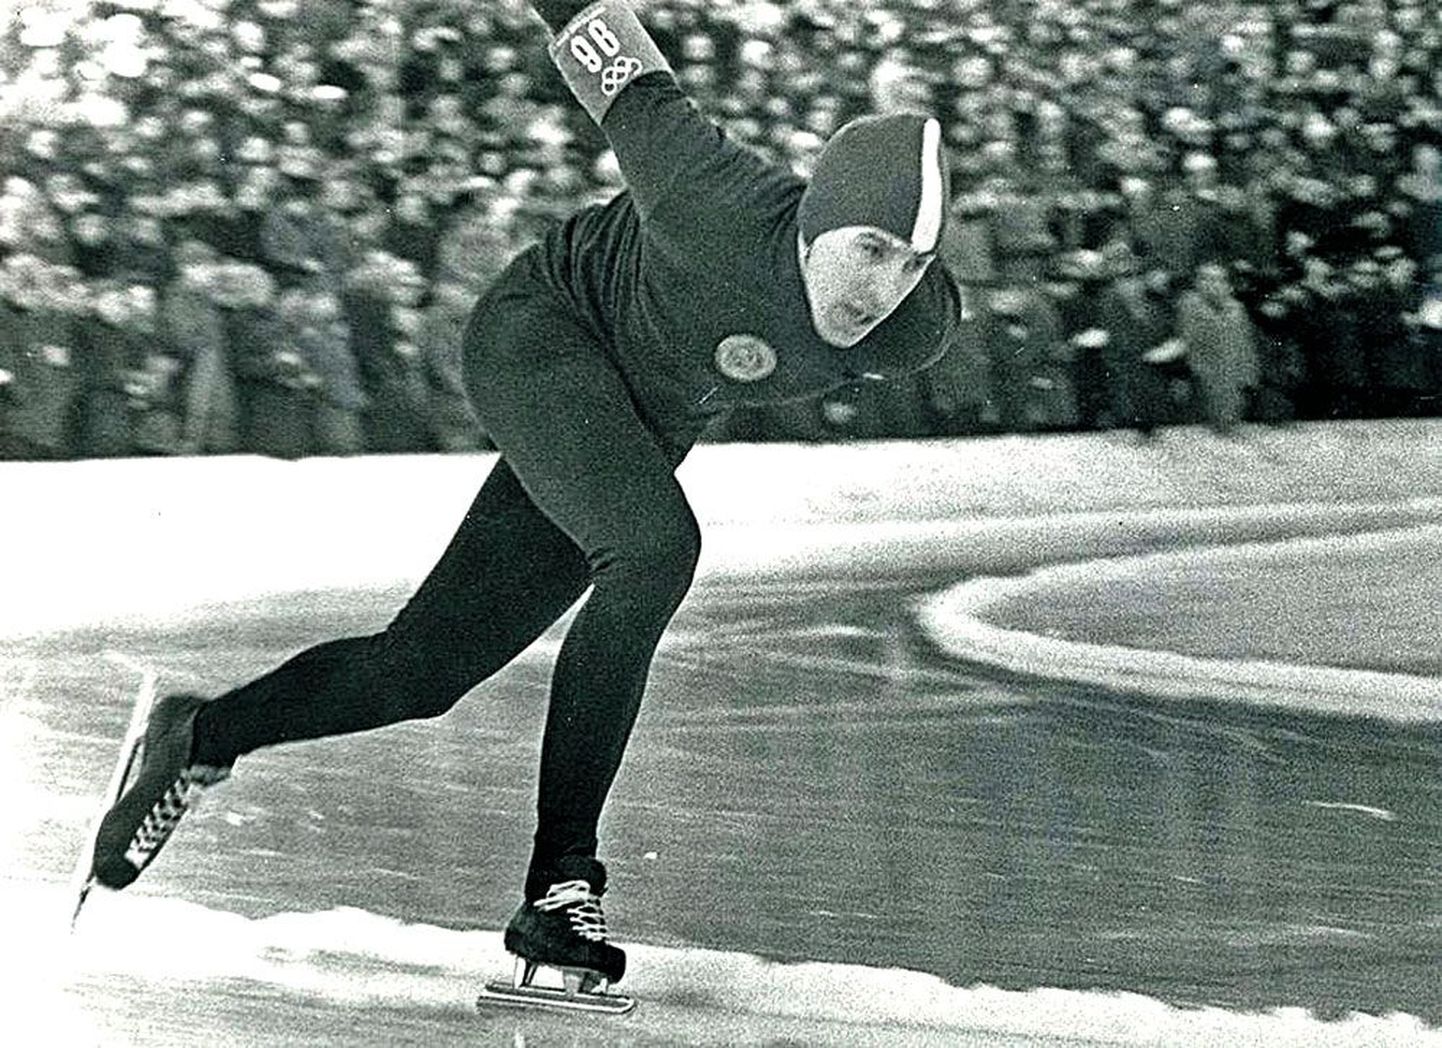 Ants Antson 1964. aasta Innsbrucki olümpial 1500 m distanstsil kuldmedali poole kihutamas.